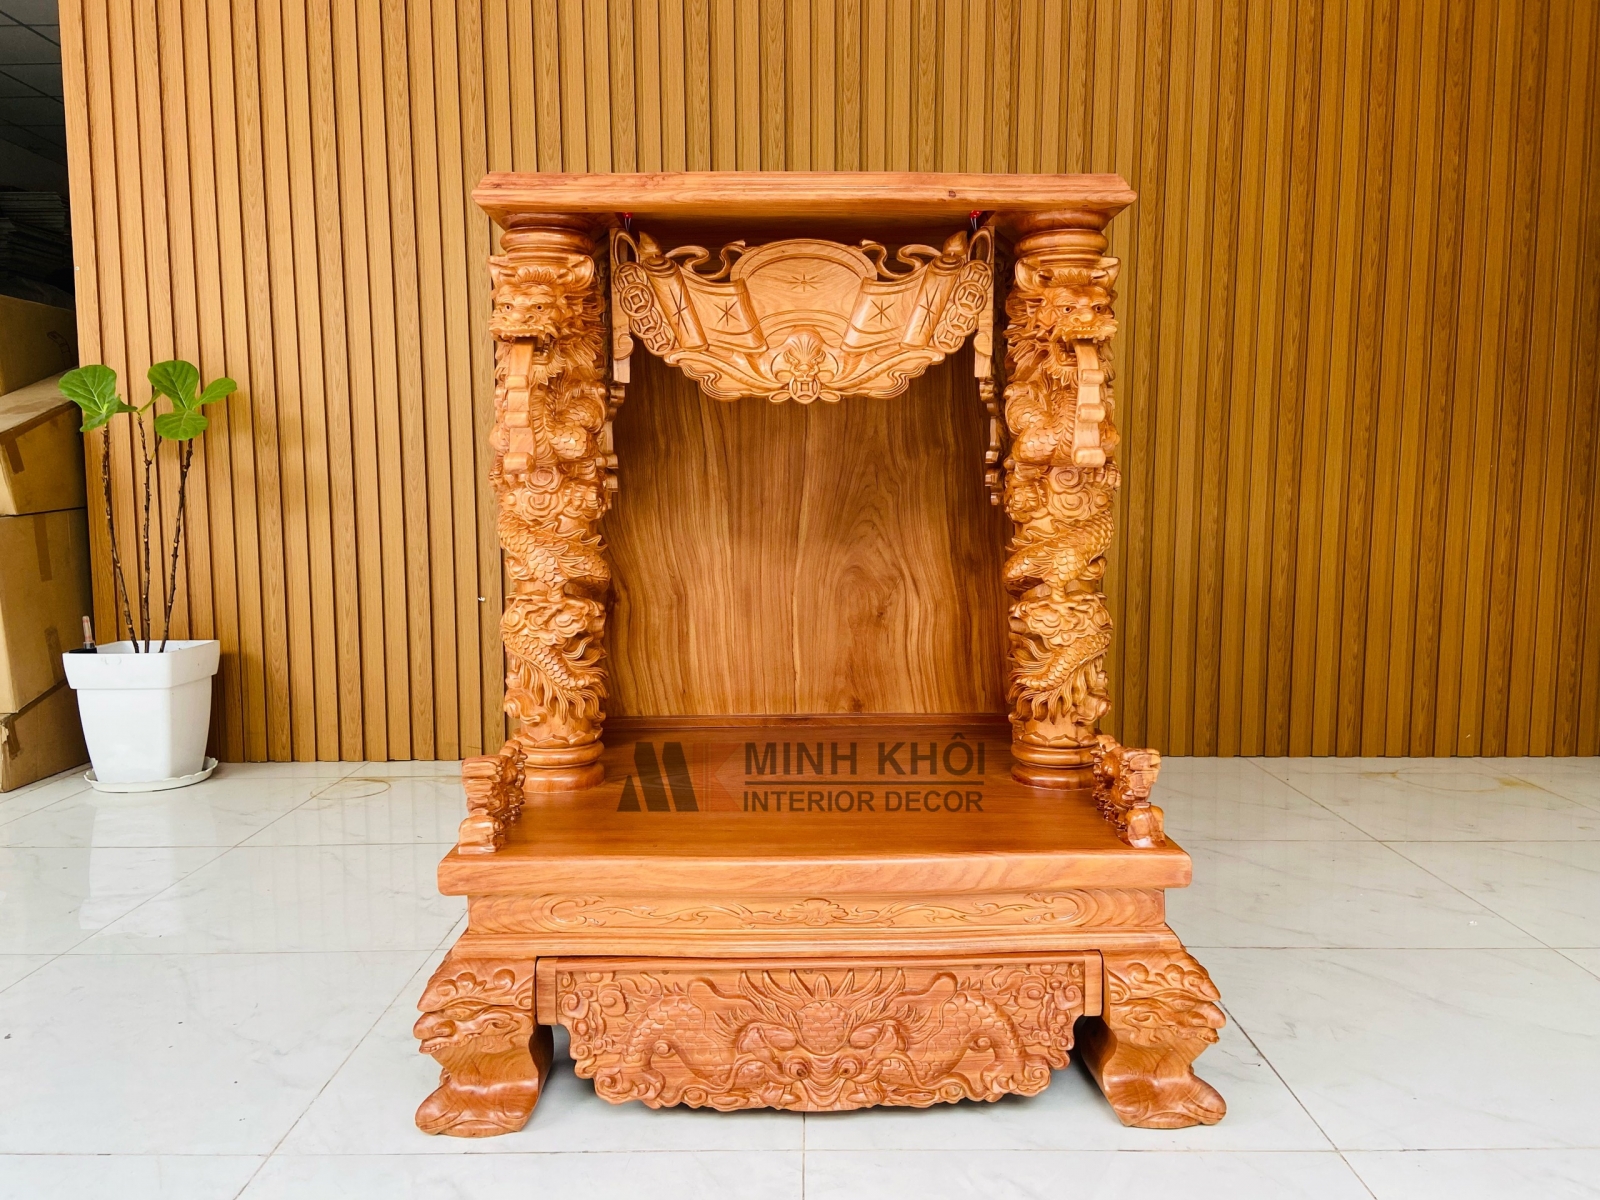 Bàn thờ ông Địa gỗ gõ đỏ cao cấp là sản phẩm không thể thiếu trong không gian thờ cúng của gia đình Việt. Với chất liệu đặc biệt và kĩ thuật chế tác tinh xảo, bạn sẽ cảm nhận được sự vượt trội của sản phẩm so với các loại bàn thờ thông thường.